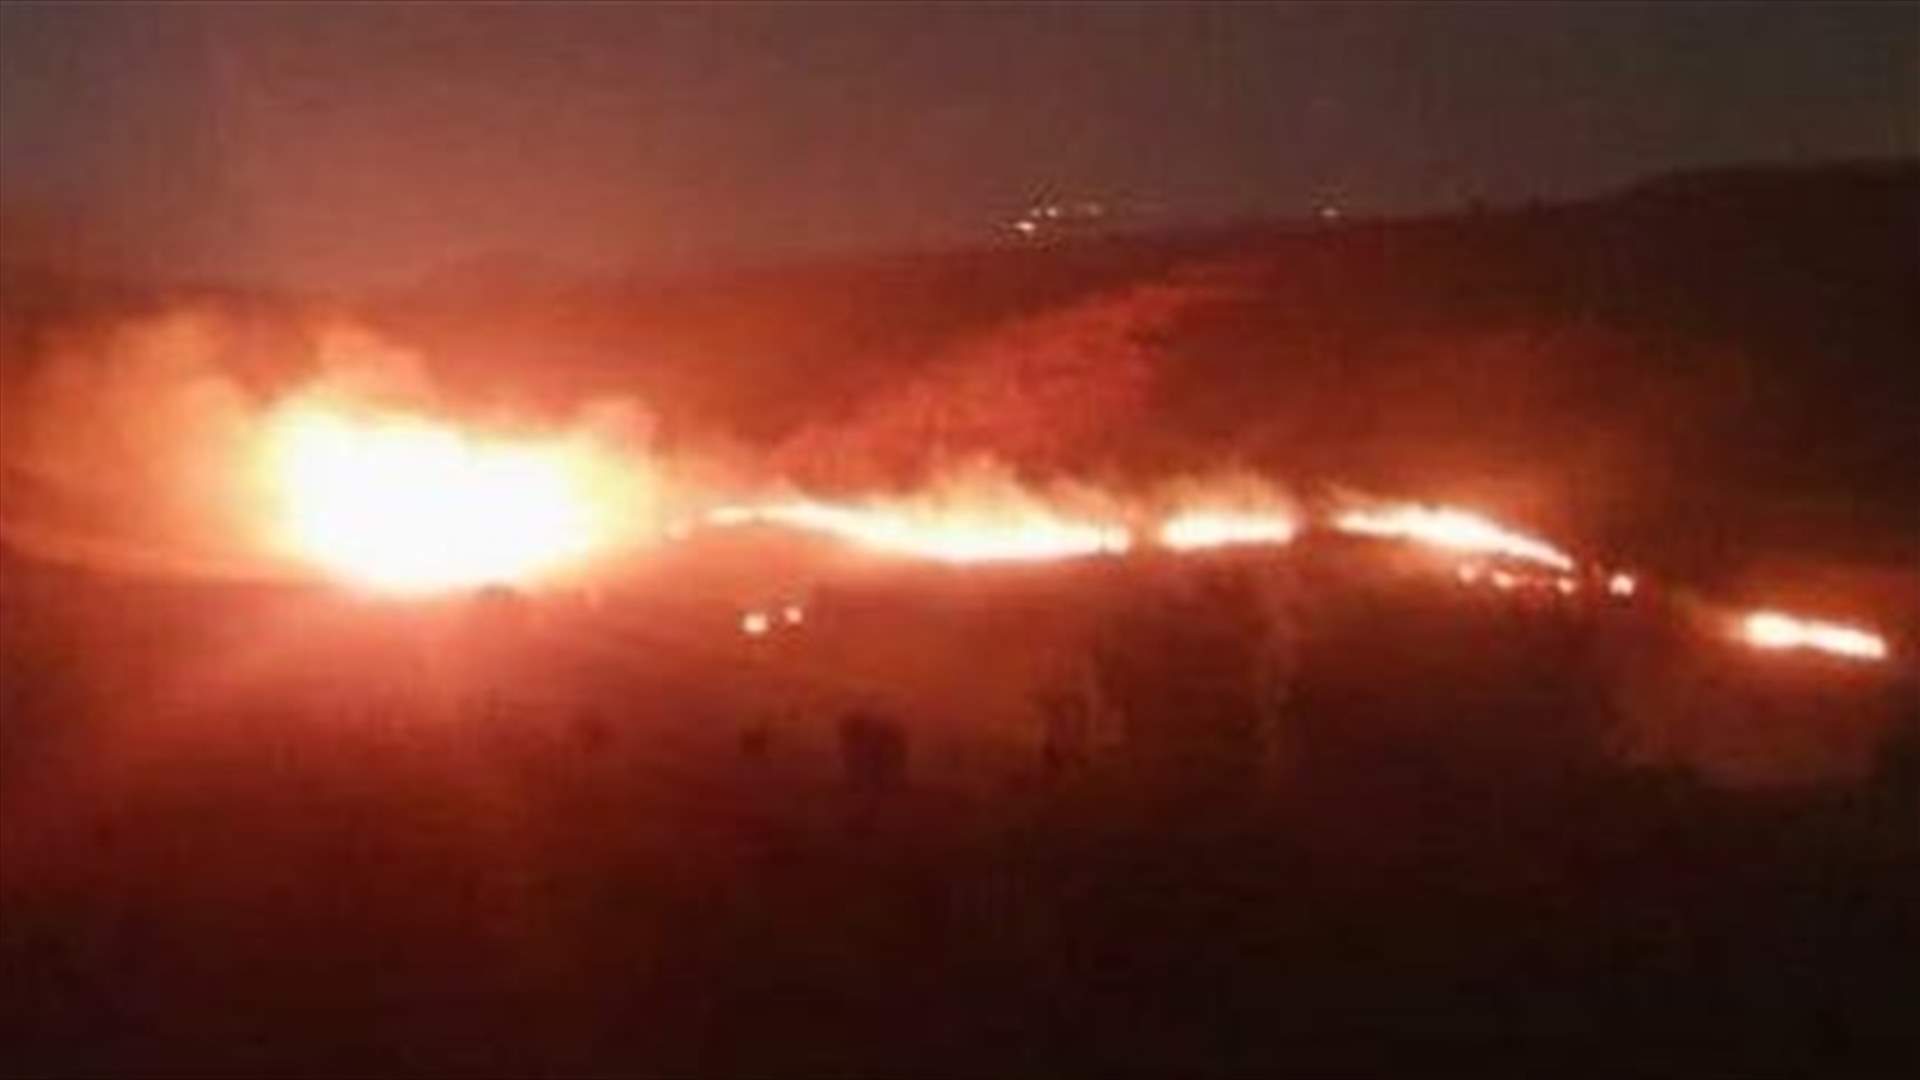 قنبلة مضيئة القاها الجيش الاسرائيلي في خراج بليدا تسببت بحريق